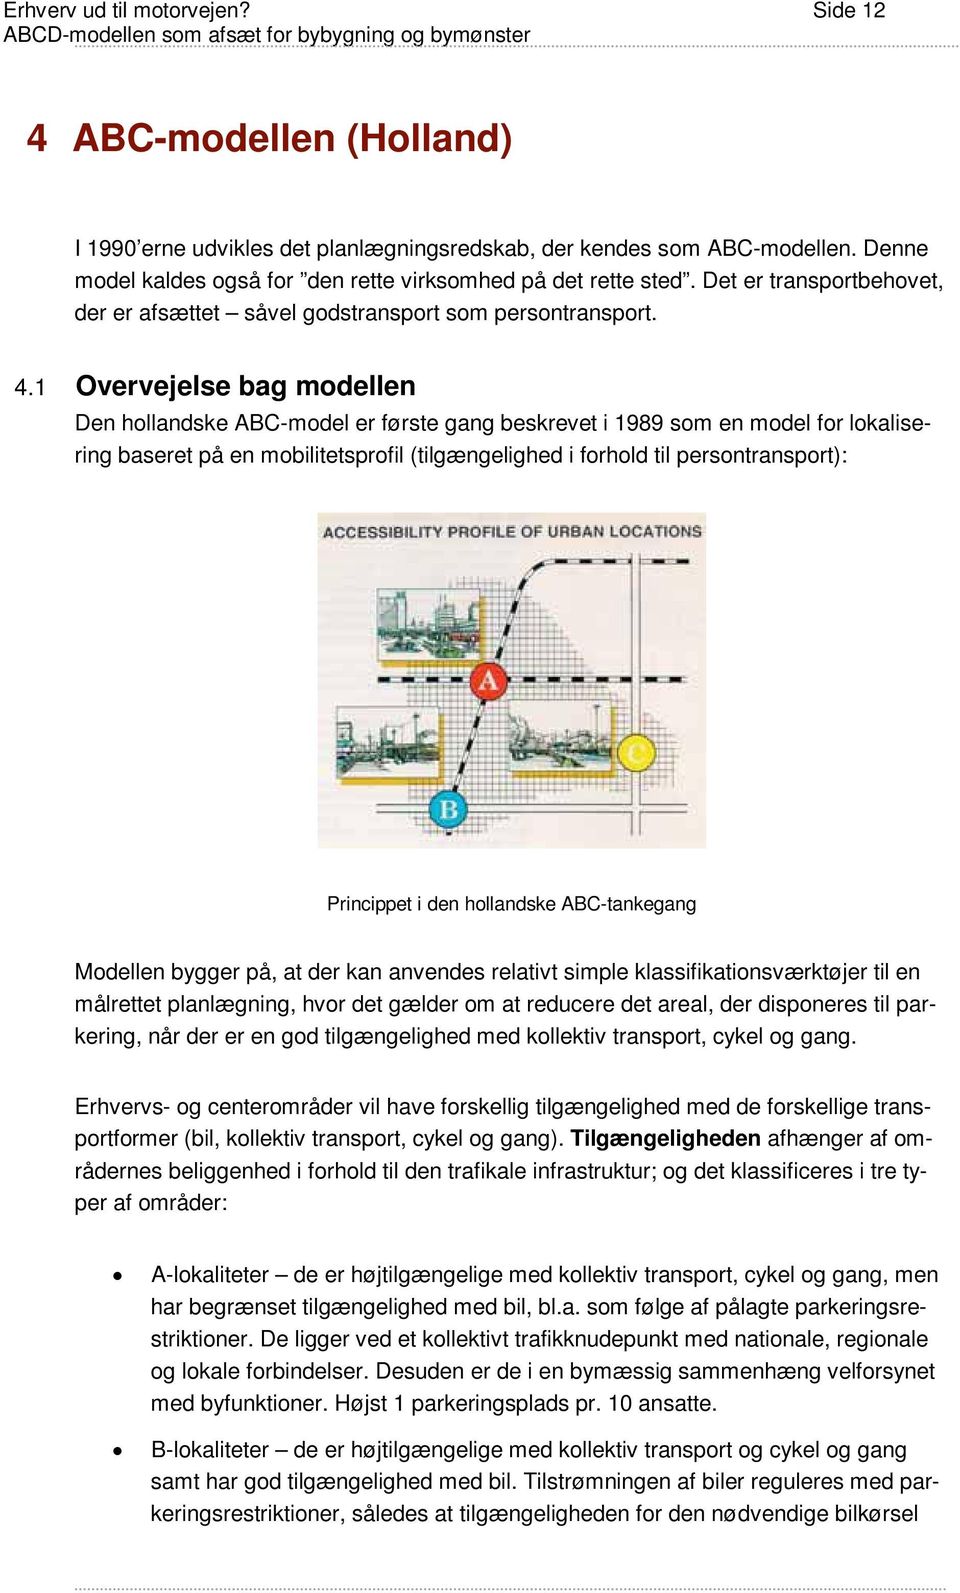 1 Overvejelse bag modellen Den hollandske ABC-model er første gang beskrevet i 1989 som en model for lokalisering baseret på en mobilitetsprofil (tilgængelighed i forhold til persontransport):